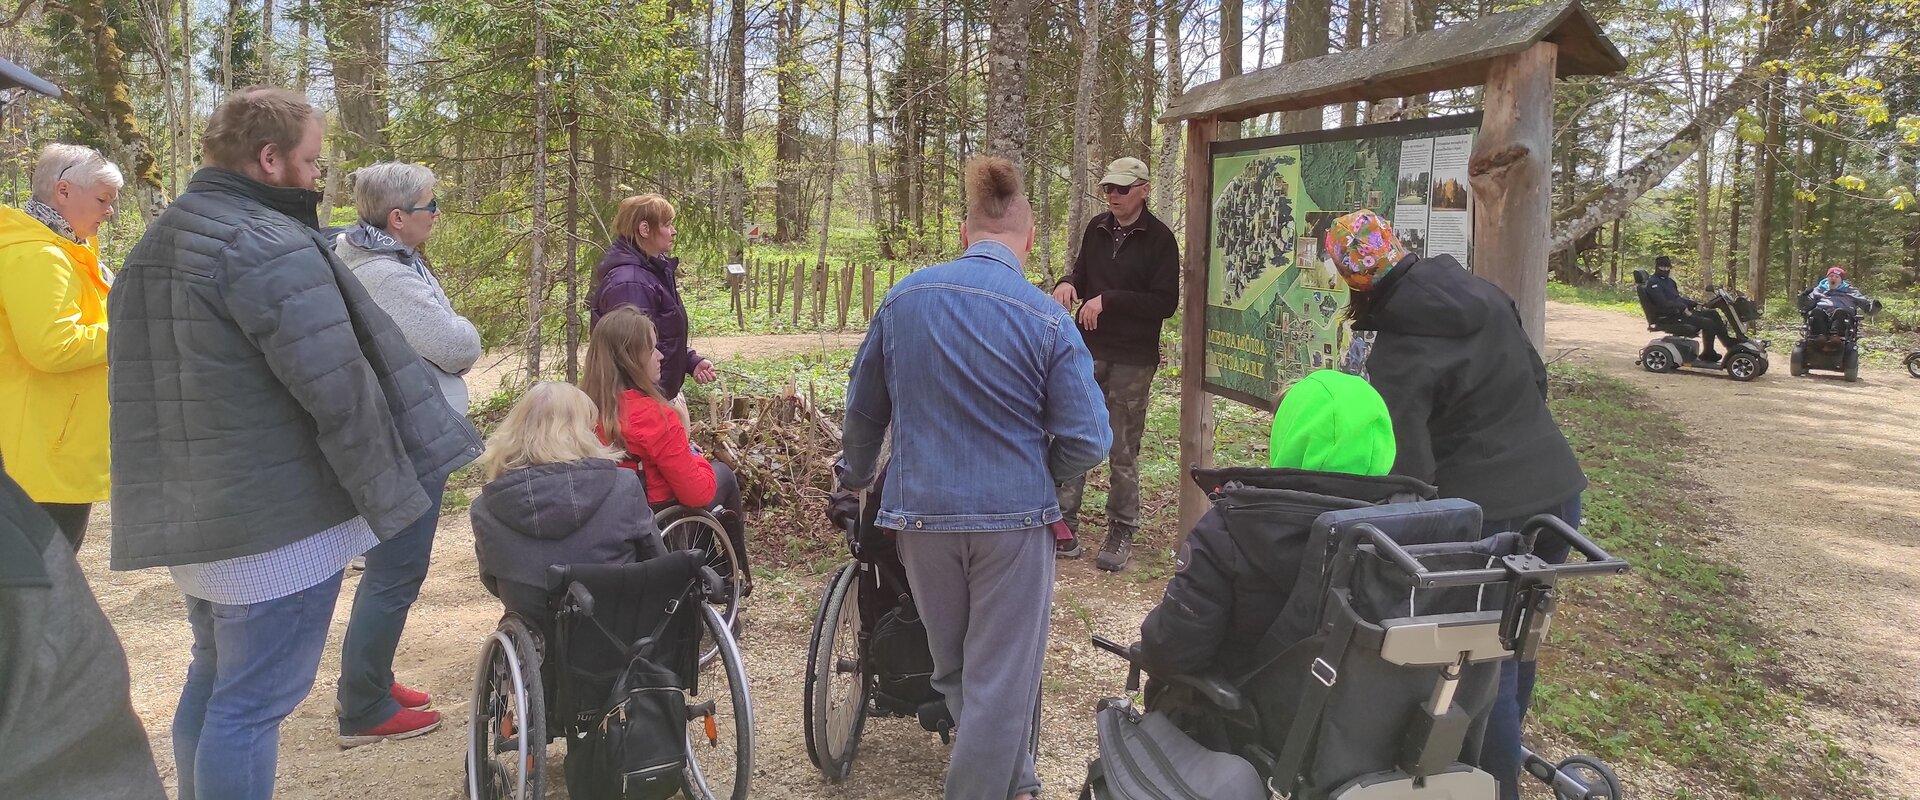 Abivahendiga liikujad loodusmatkal metsapargis oleval ratastoolirajal